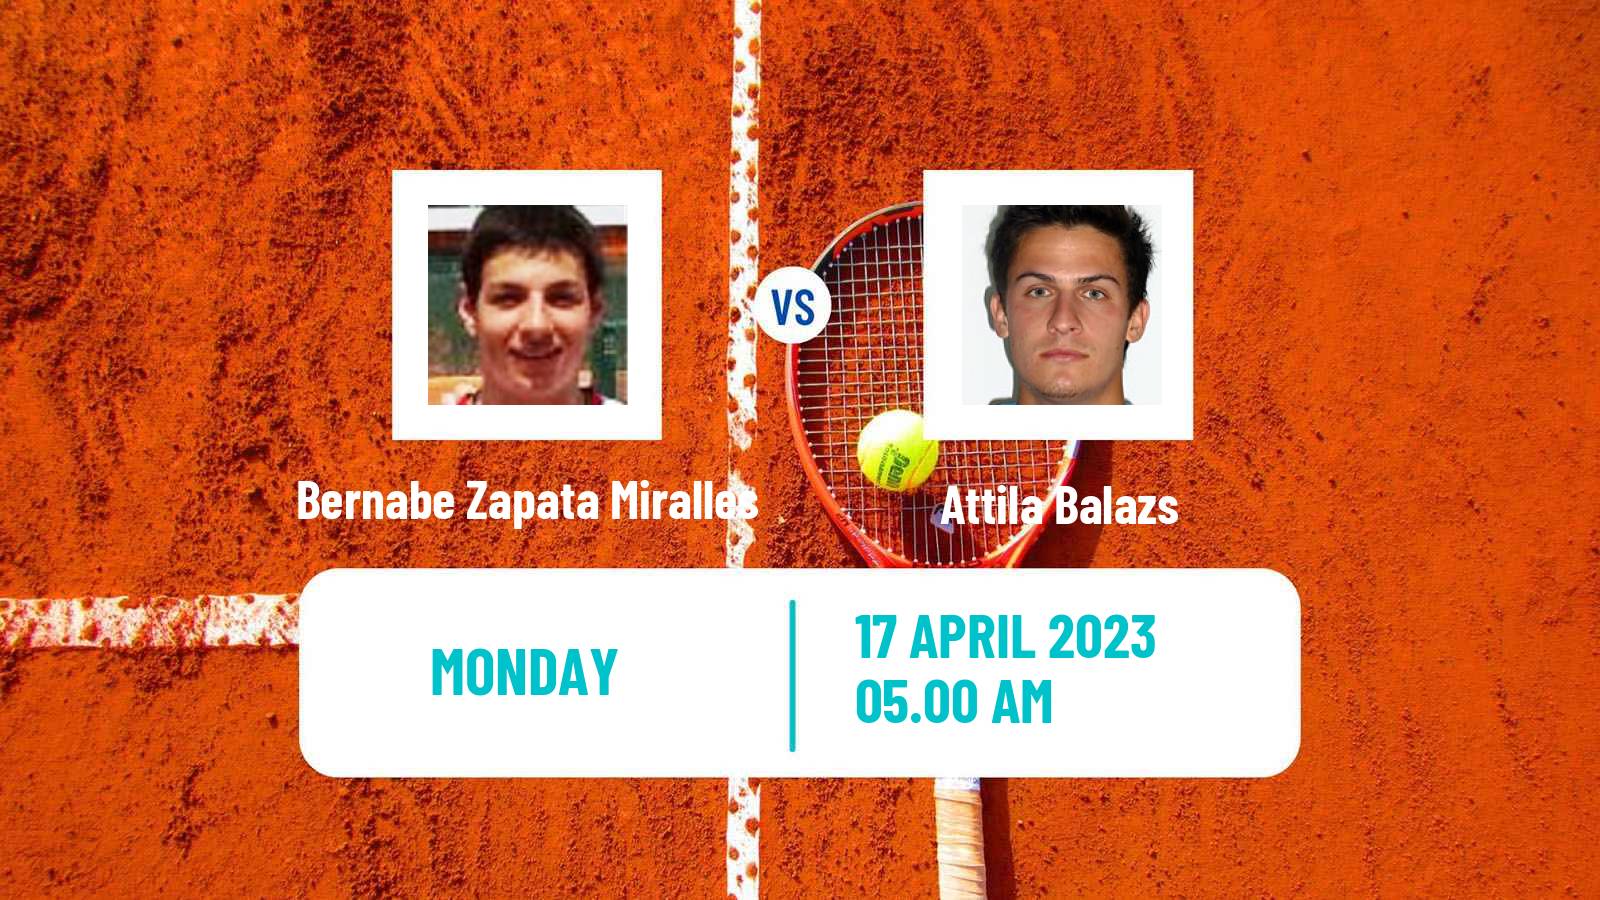 Tennis ATP Barcelona Bernabe Zapata Miralles - Attila Balazs